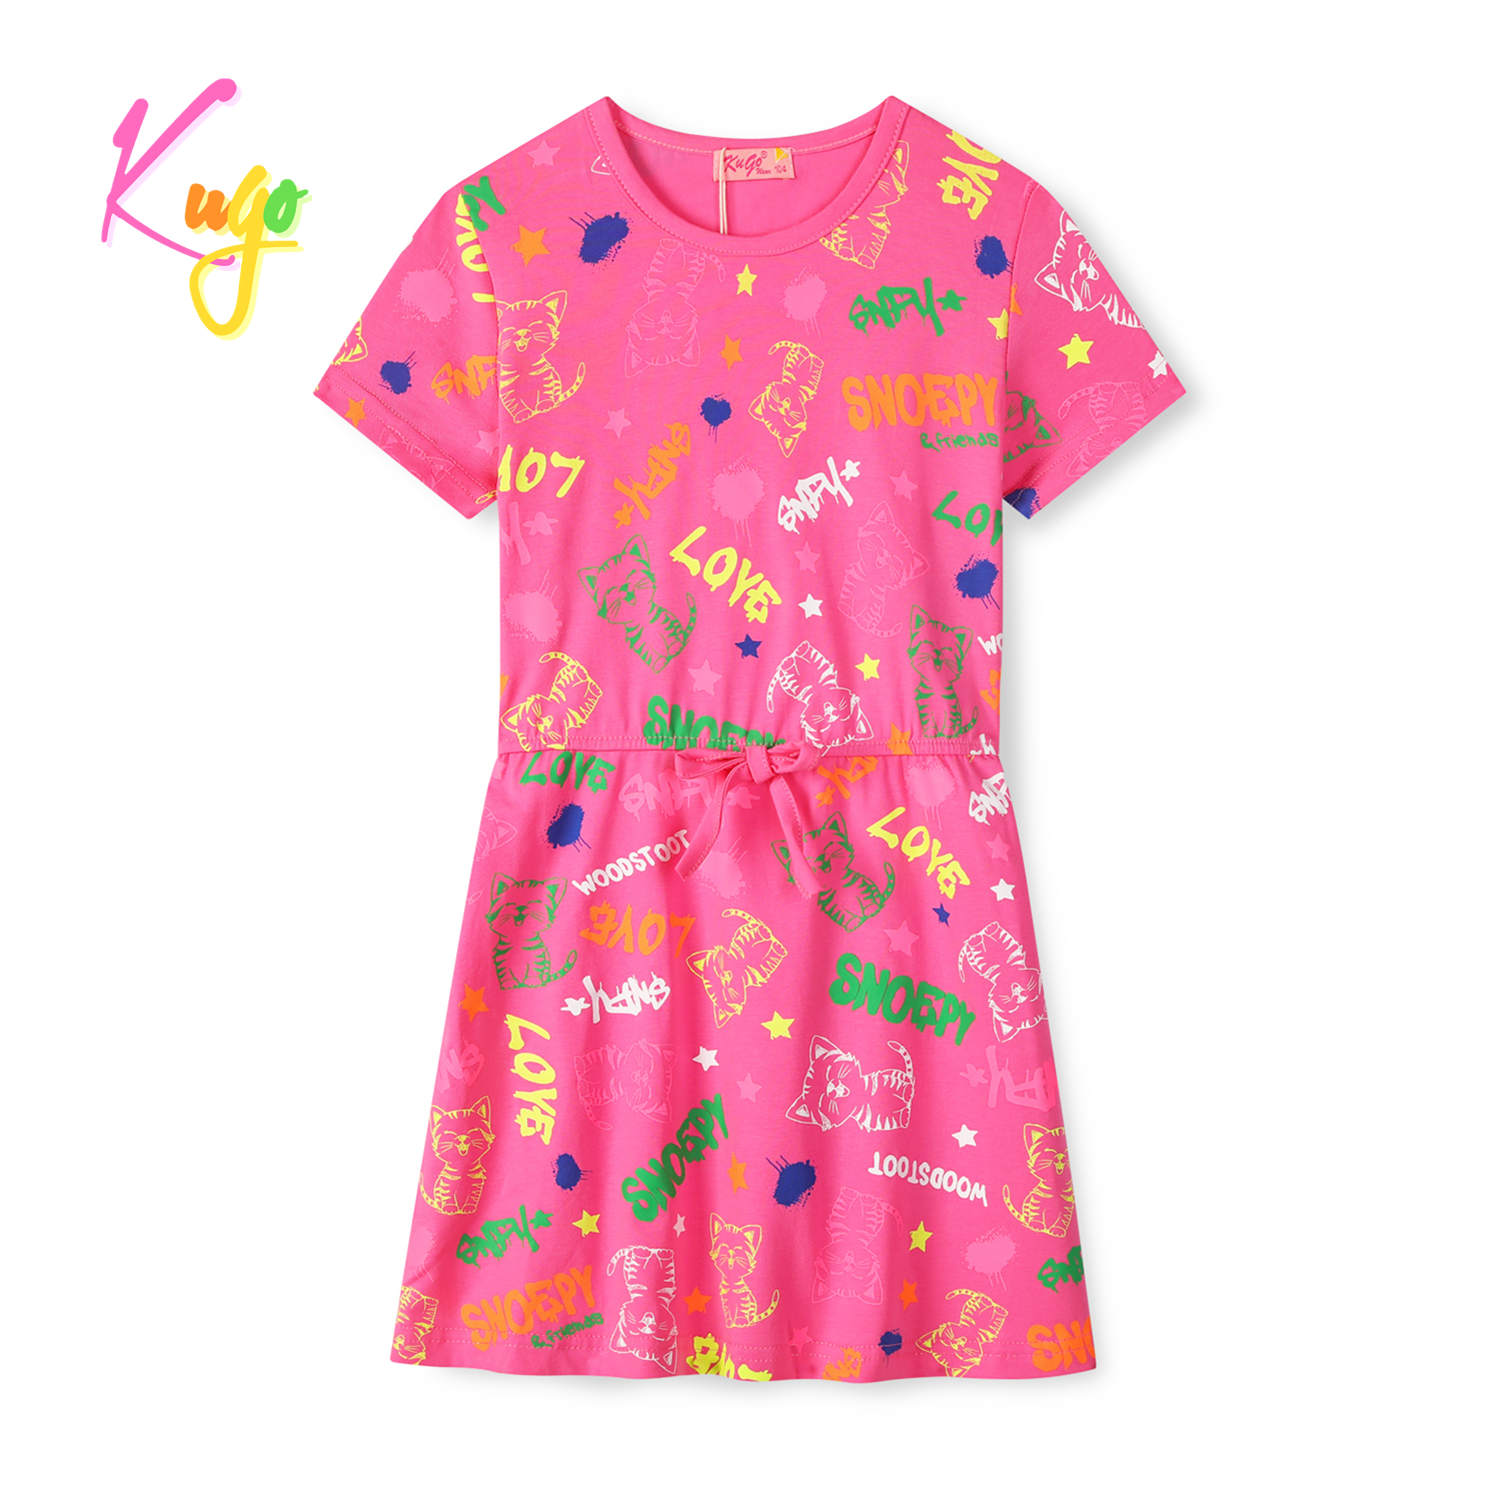 Dívčí šaty - KUGO CS1026, sytě růžová Barva: Růžová, Velikost: 116